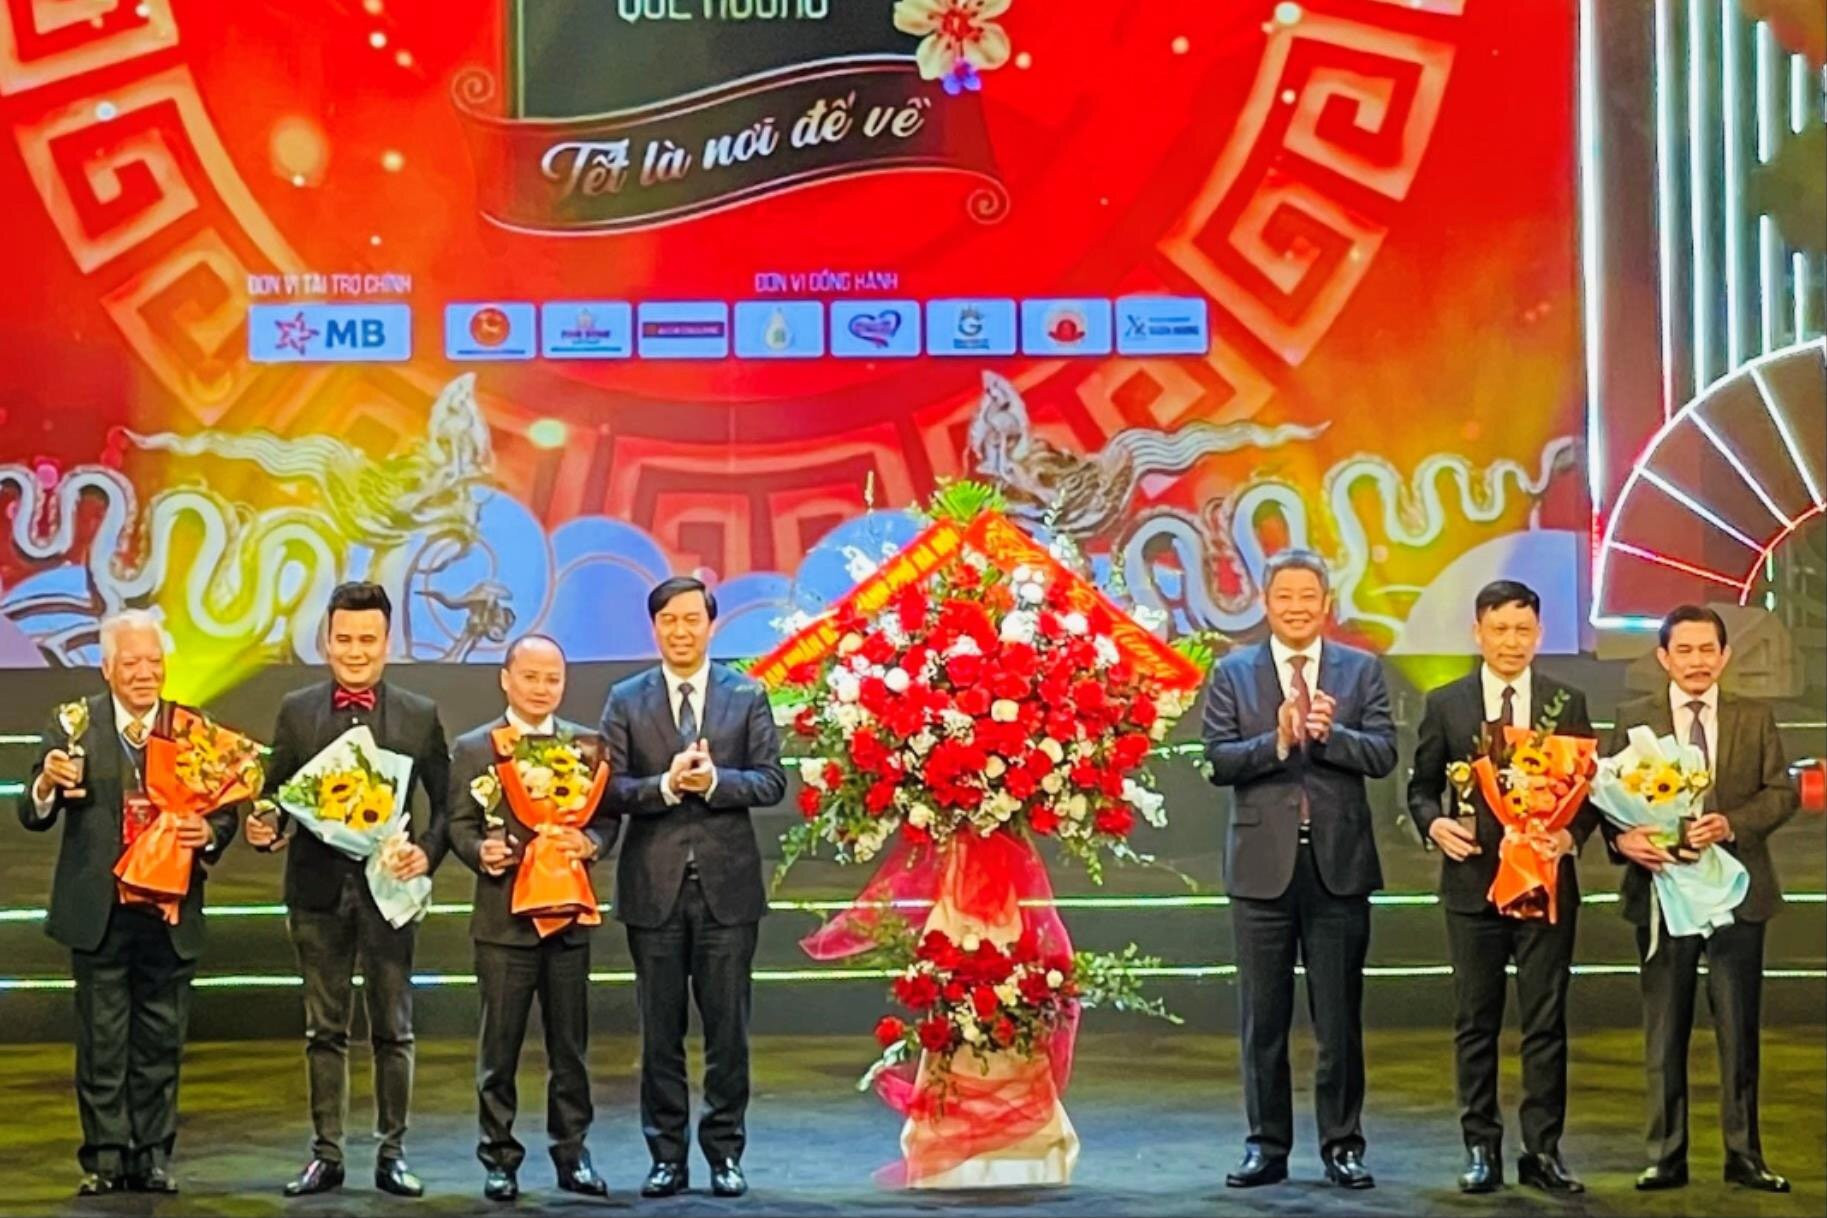 Phó Chủ tịch UBND thành phố Hà Nội Nguyễn Mạnh Quyền trao lẵng hoa của UBND thành phố tặng Ban Tổ chức chương trình.